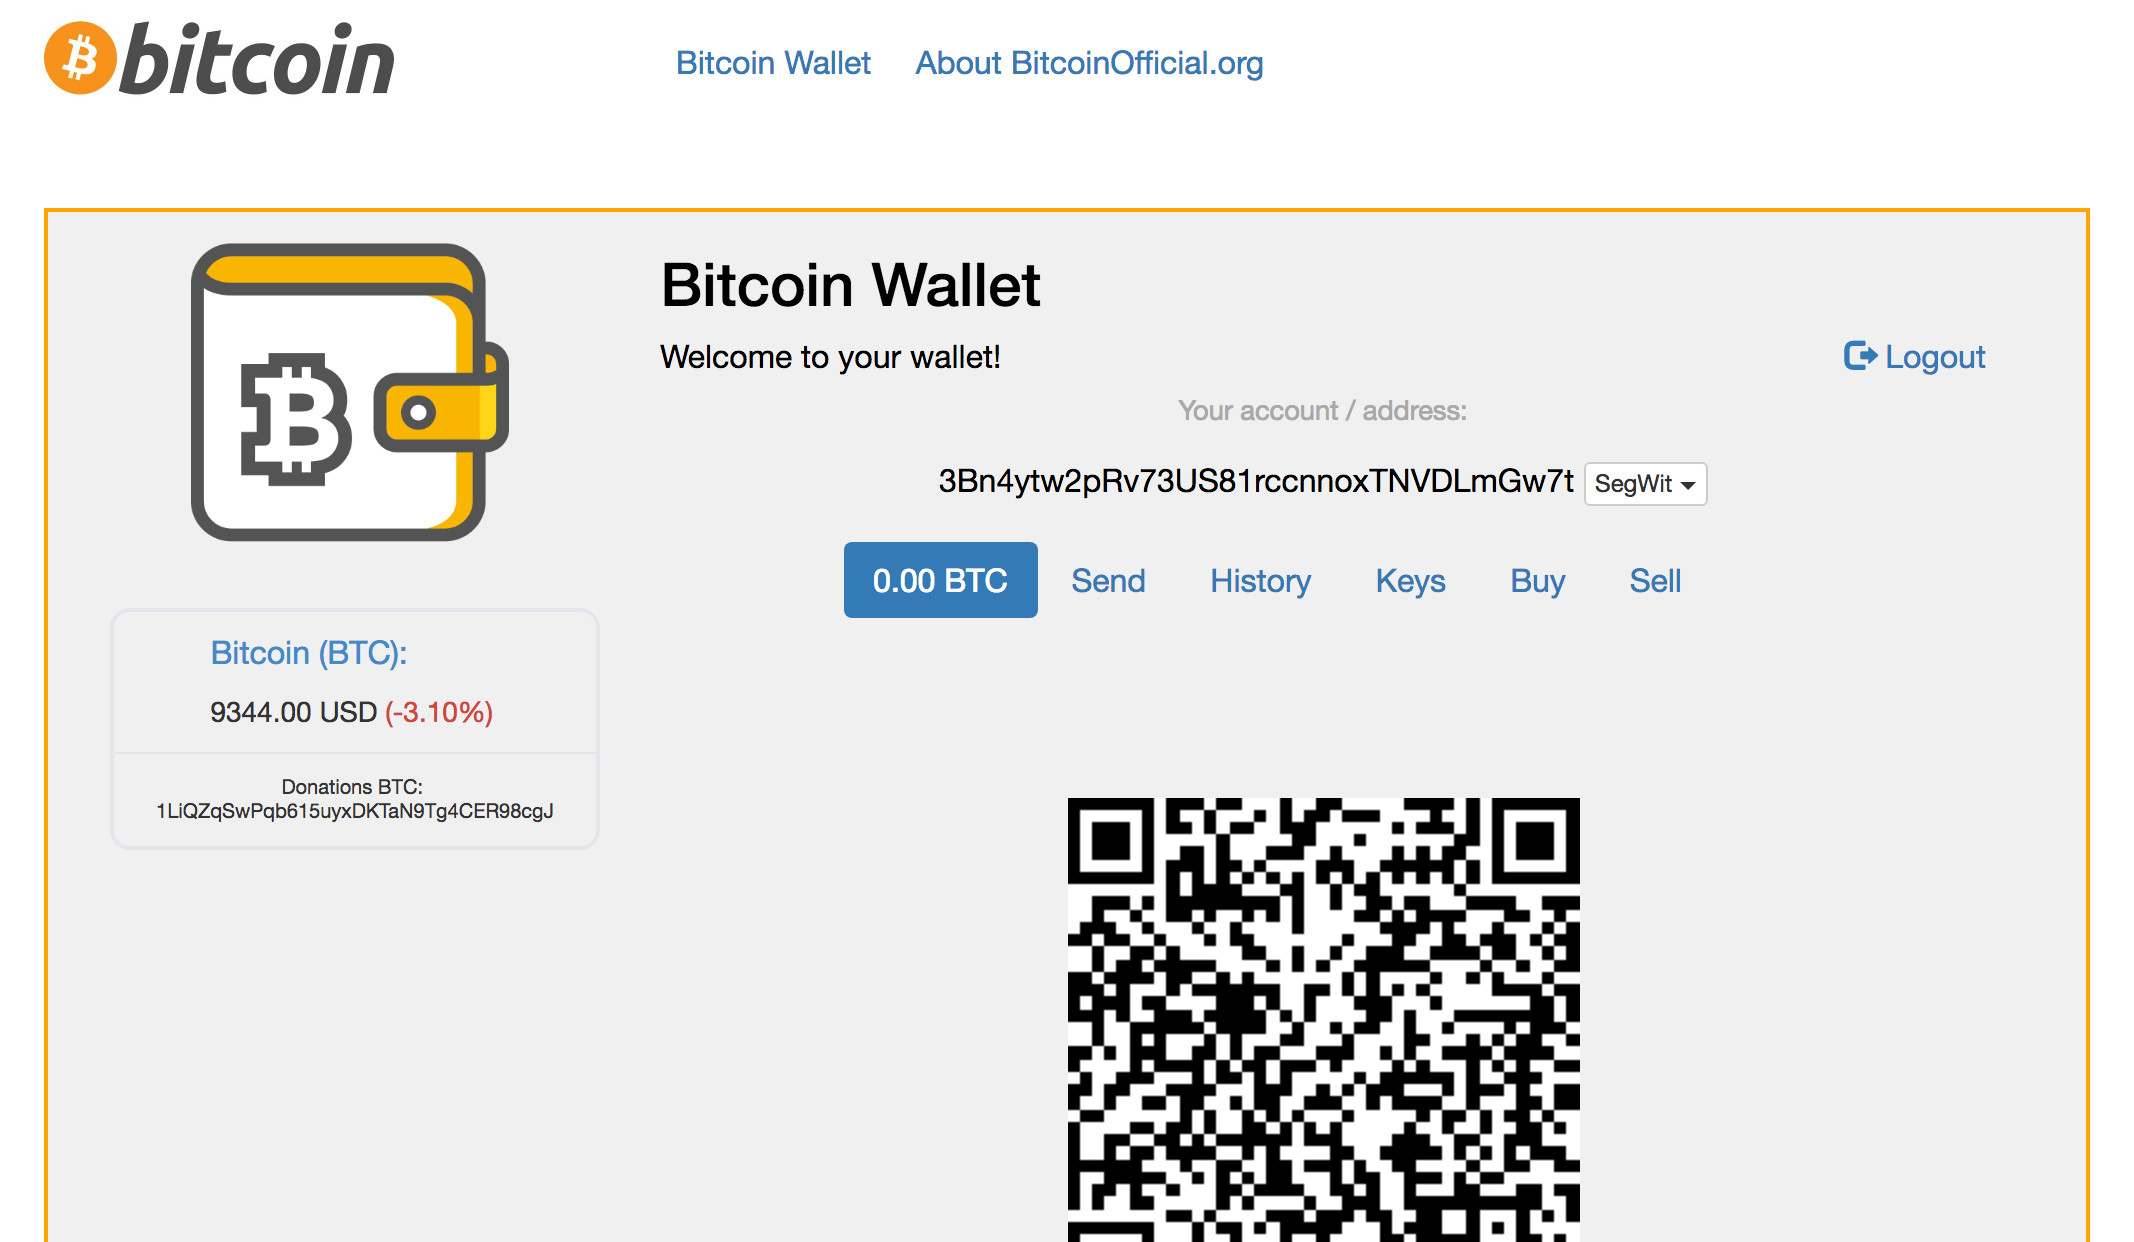 Bitcoin wallet interface (bitcoinofficial.org)